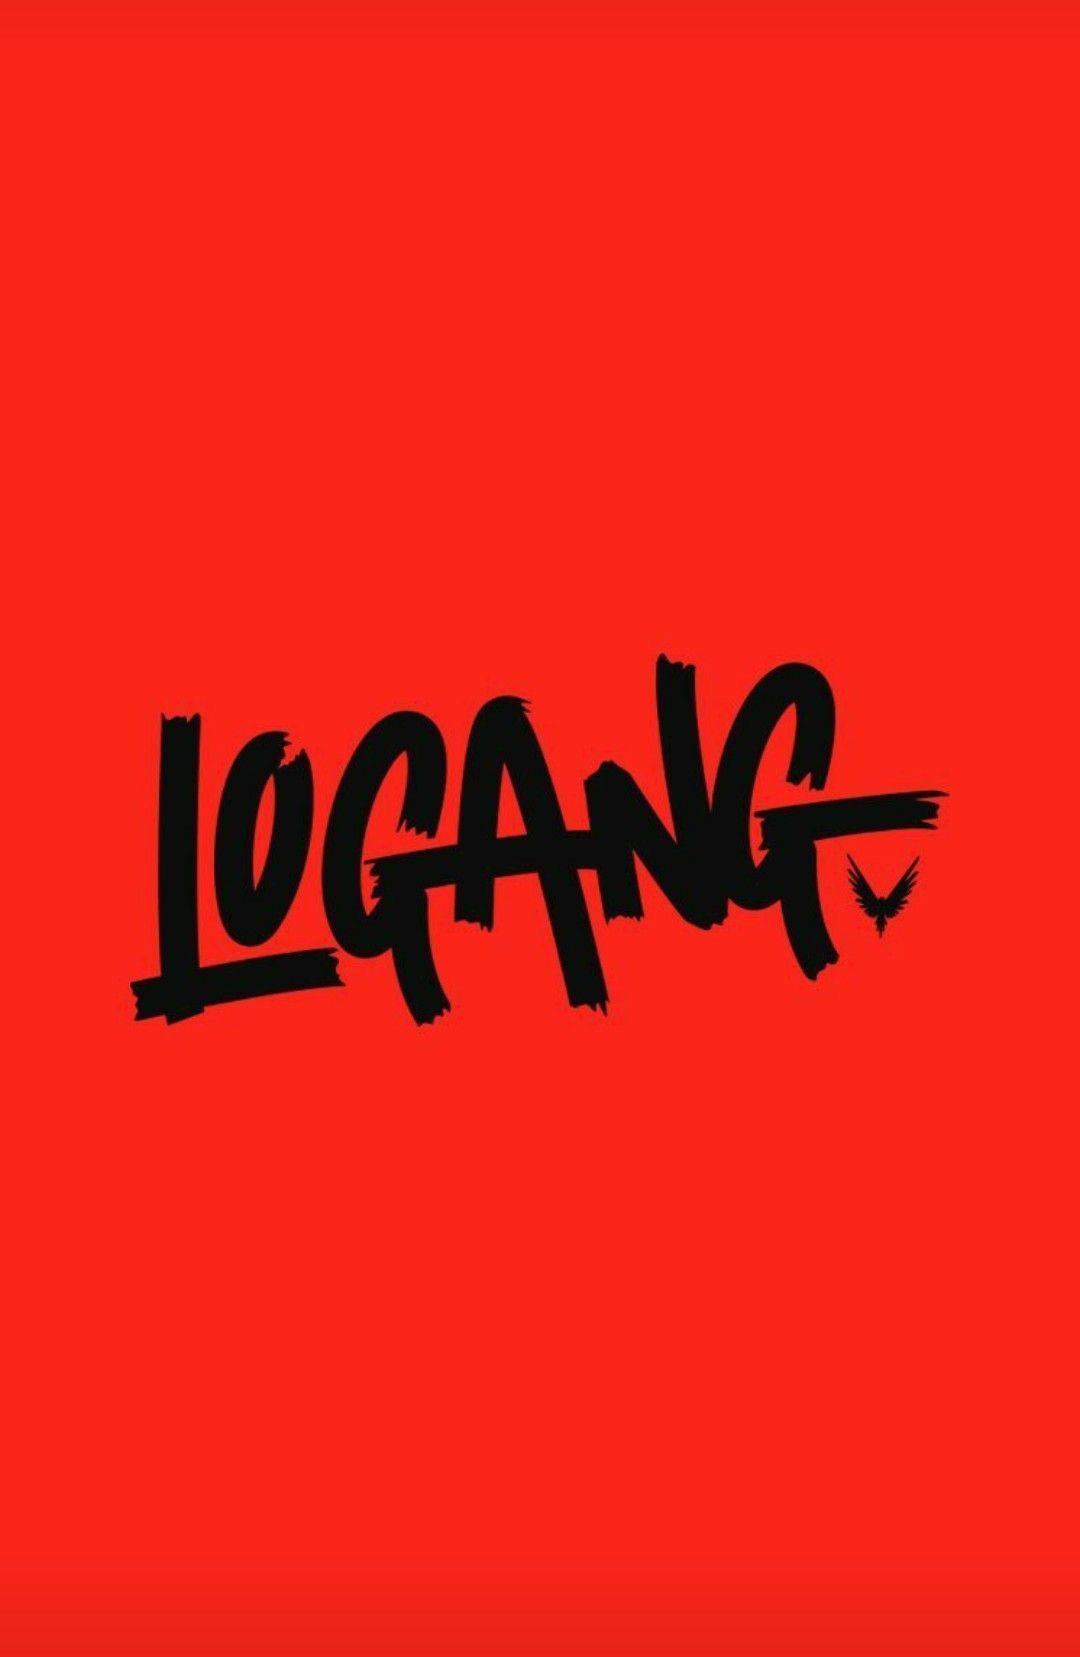 Loang Logo - Logan Paul Wallpapers - Wallpaper Cave